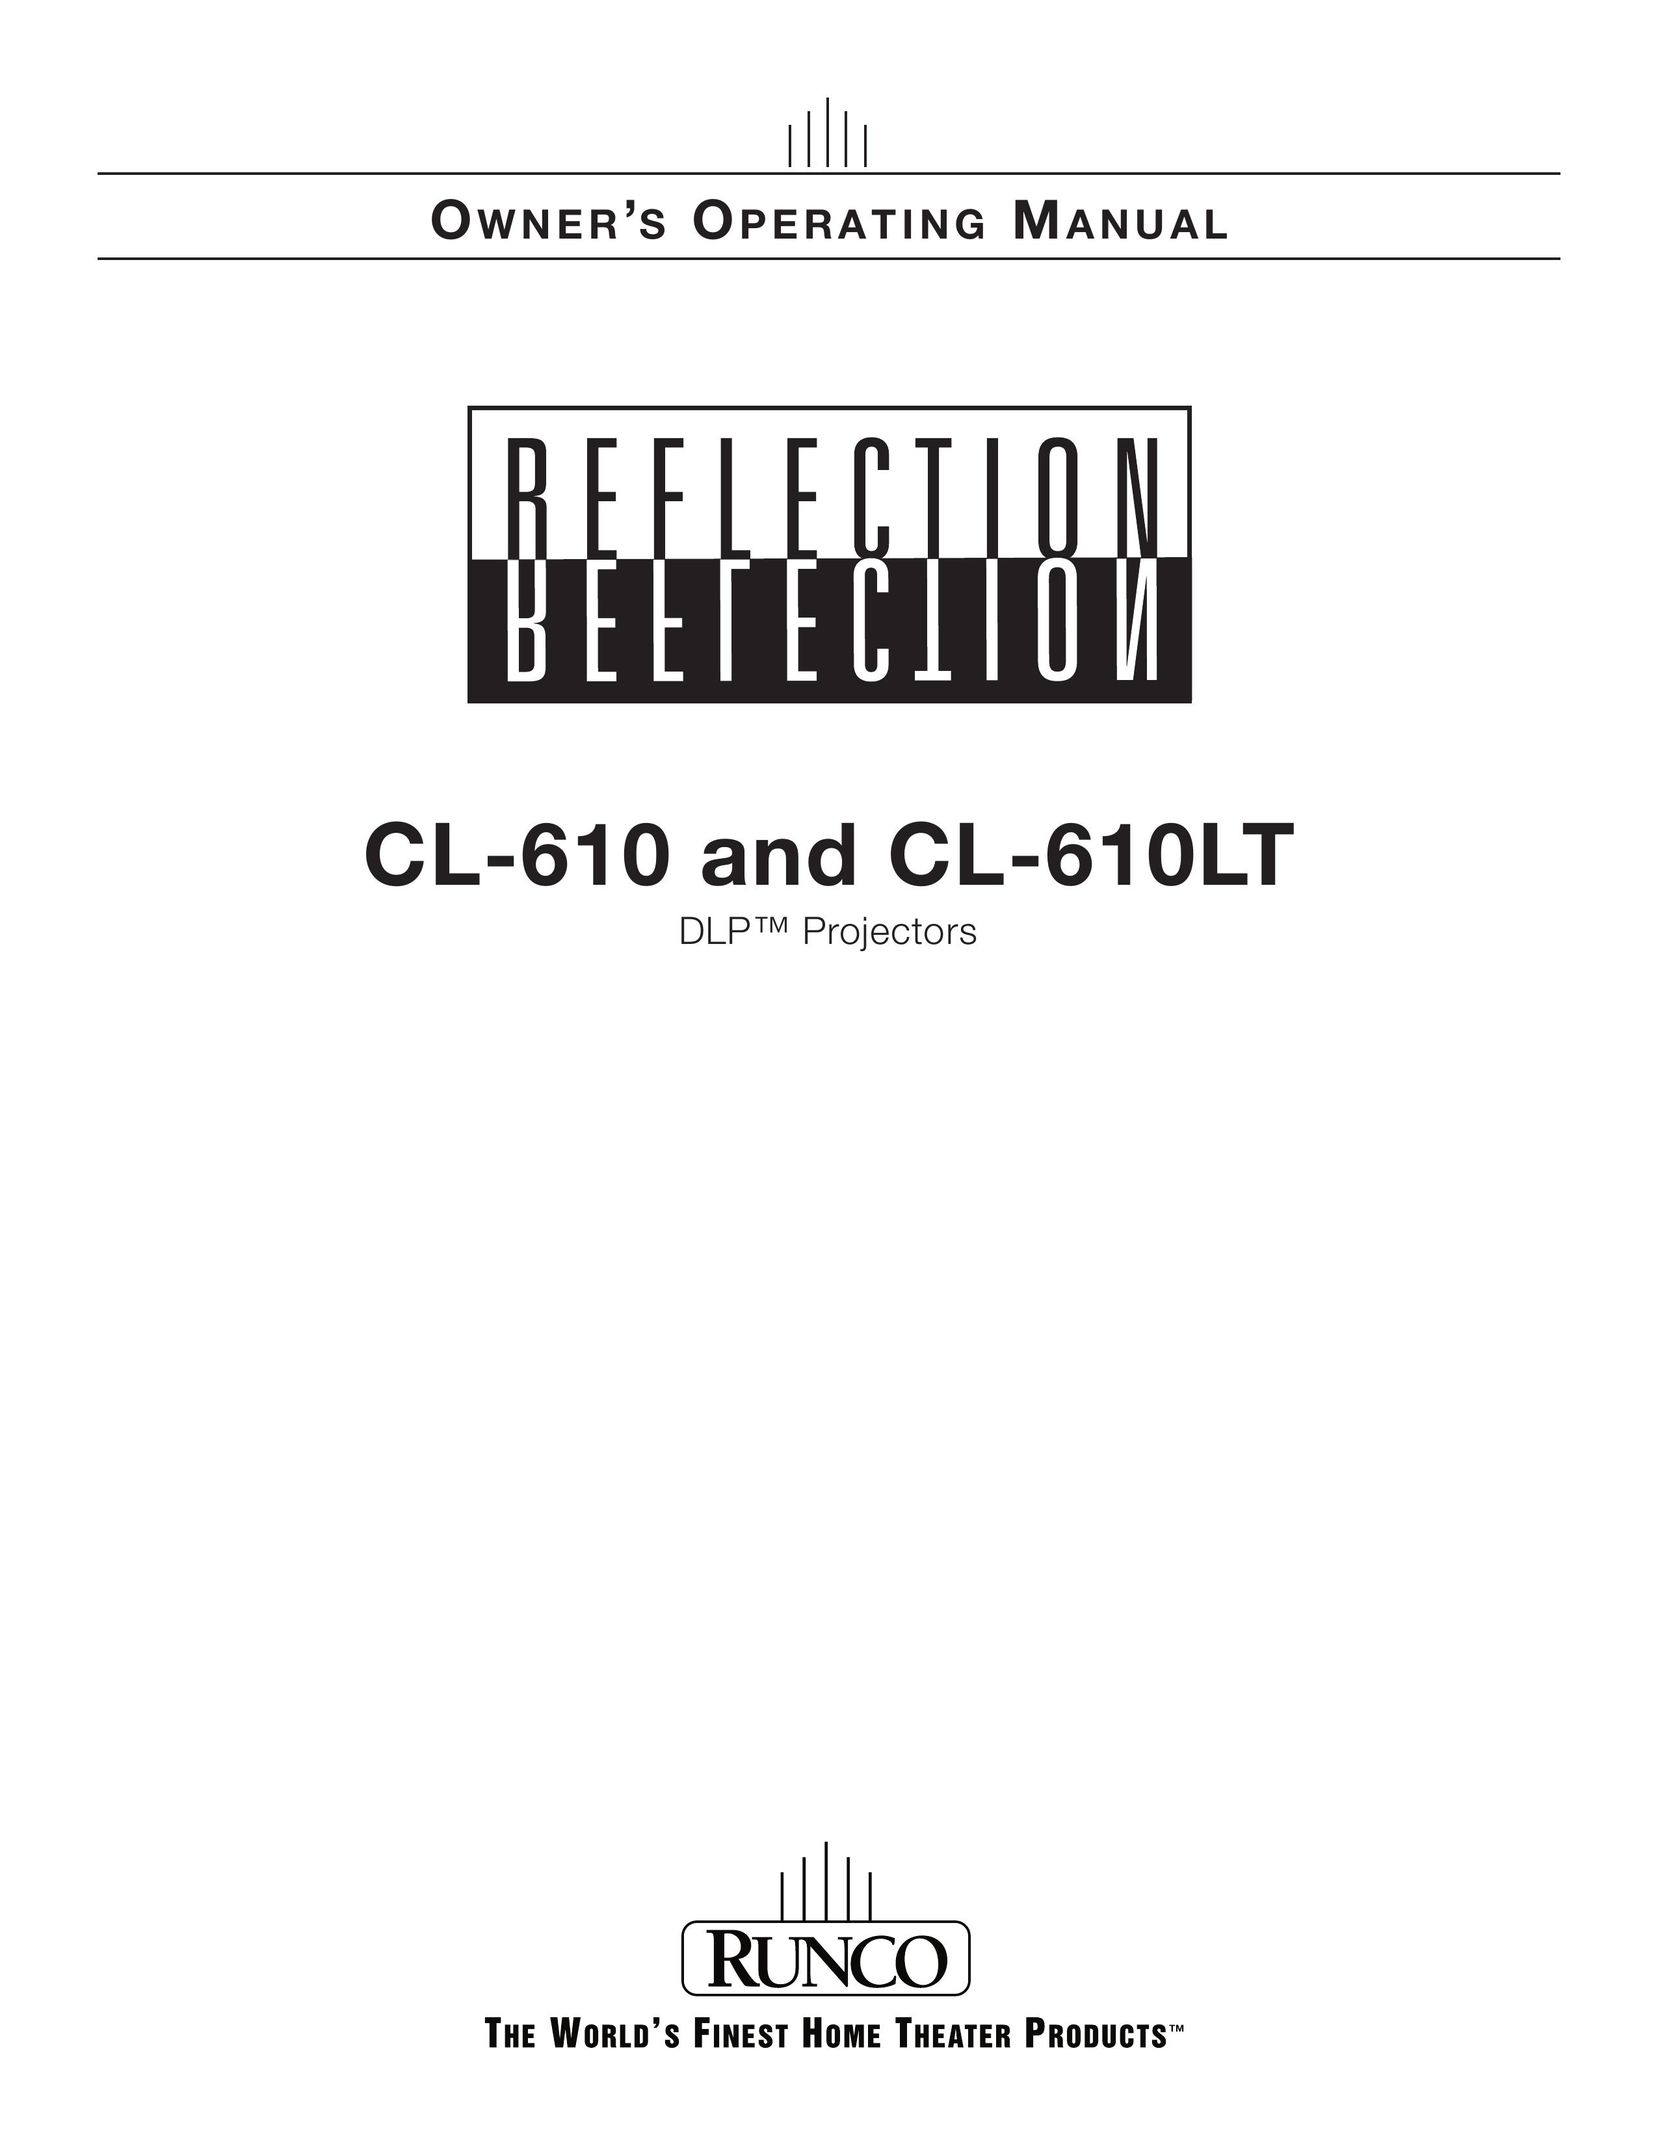 Runco CL-610LT Projector User Manual